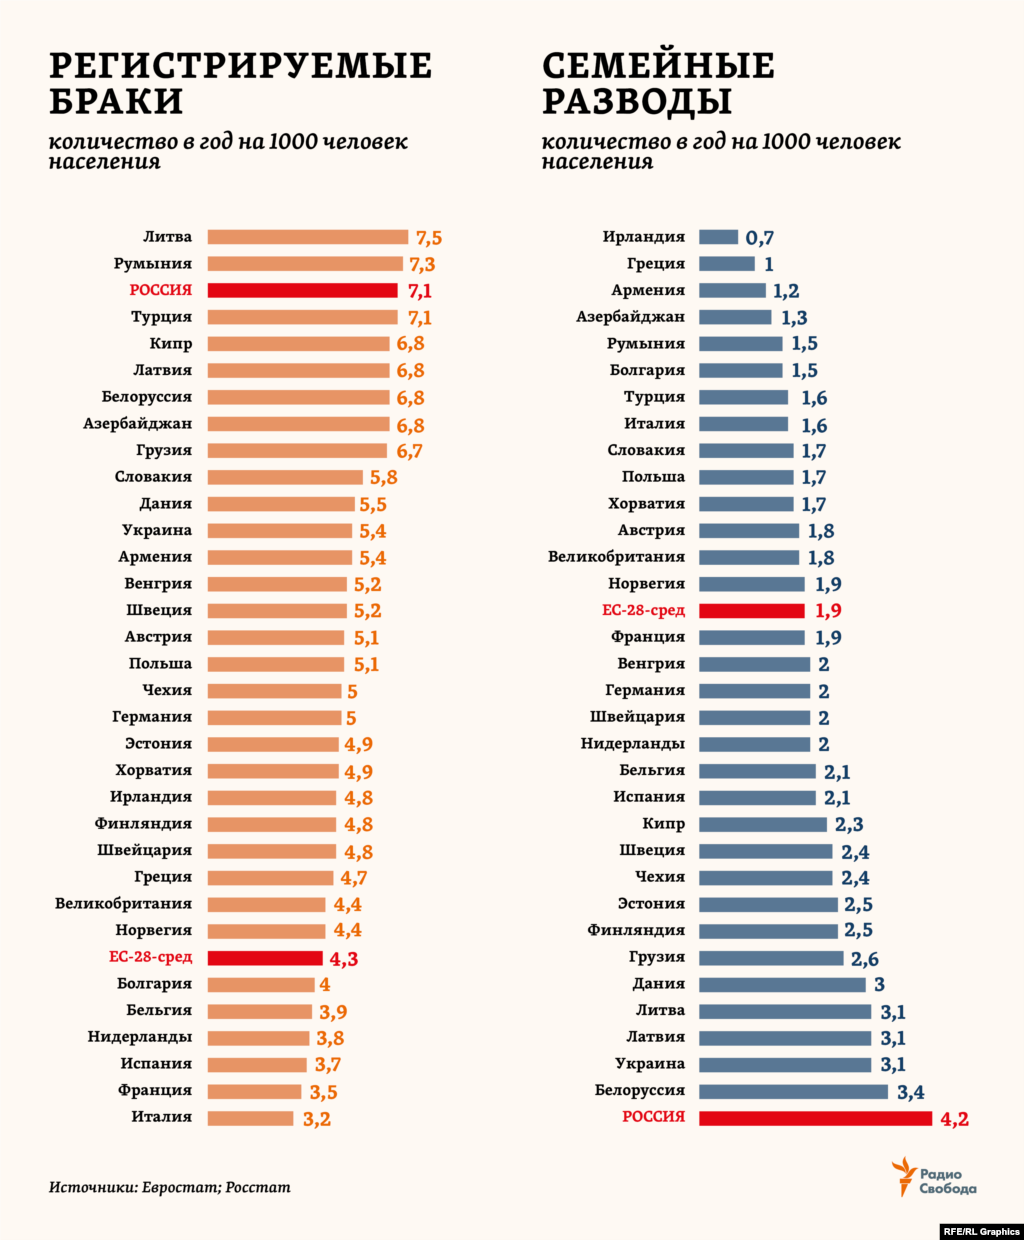 Самый большой перевес женского населения над мужским (+24,5 млн) &ndash; в Европе (ООН включает также в этот регион Россию, Украину, Белоруссию и Молдавию). Здесь за последние полвека количество регистрируемых браков сократилось почти 2 раза, а количество разводов, наоборот, возросло в 2,5 раза. В России, где, наоборот, на каждую тысячу мужчин приходится 1156 женщин (оценки Росстата за 2018 год), &ndash; один из самых высоких показателей по количеству браков. Но при этом и самый высокий, с большим отрывом от других стран региона, &ndash; по разводам.